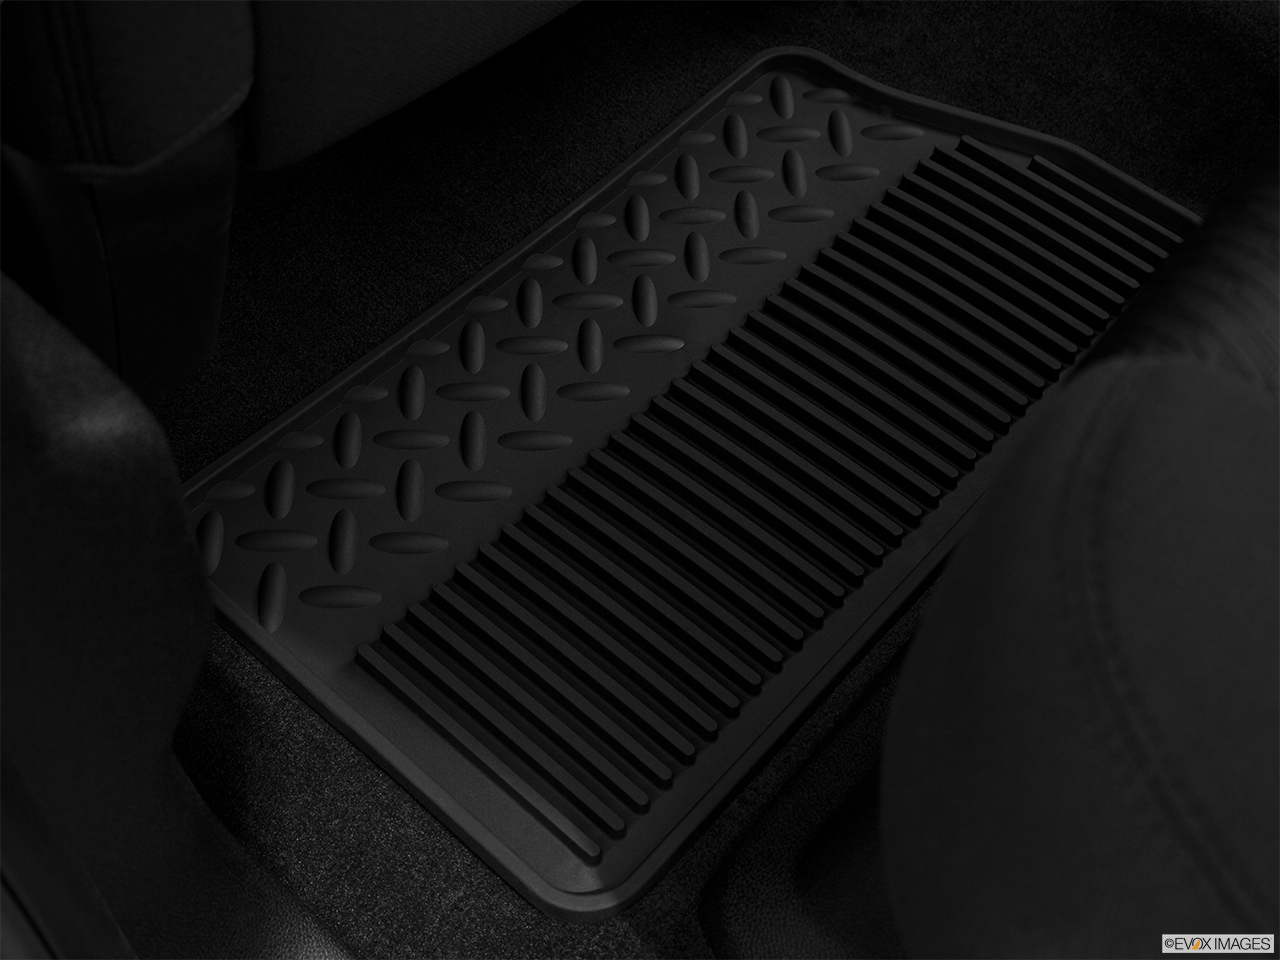 2013 GMC Sierra 1500 Hybrid 3HA Rear driver's side floor mat. Mid-seat level from outside looking in. 